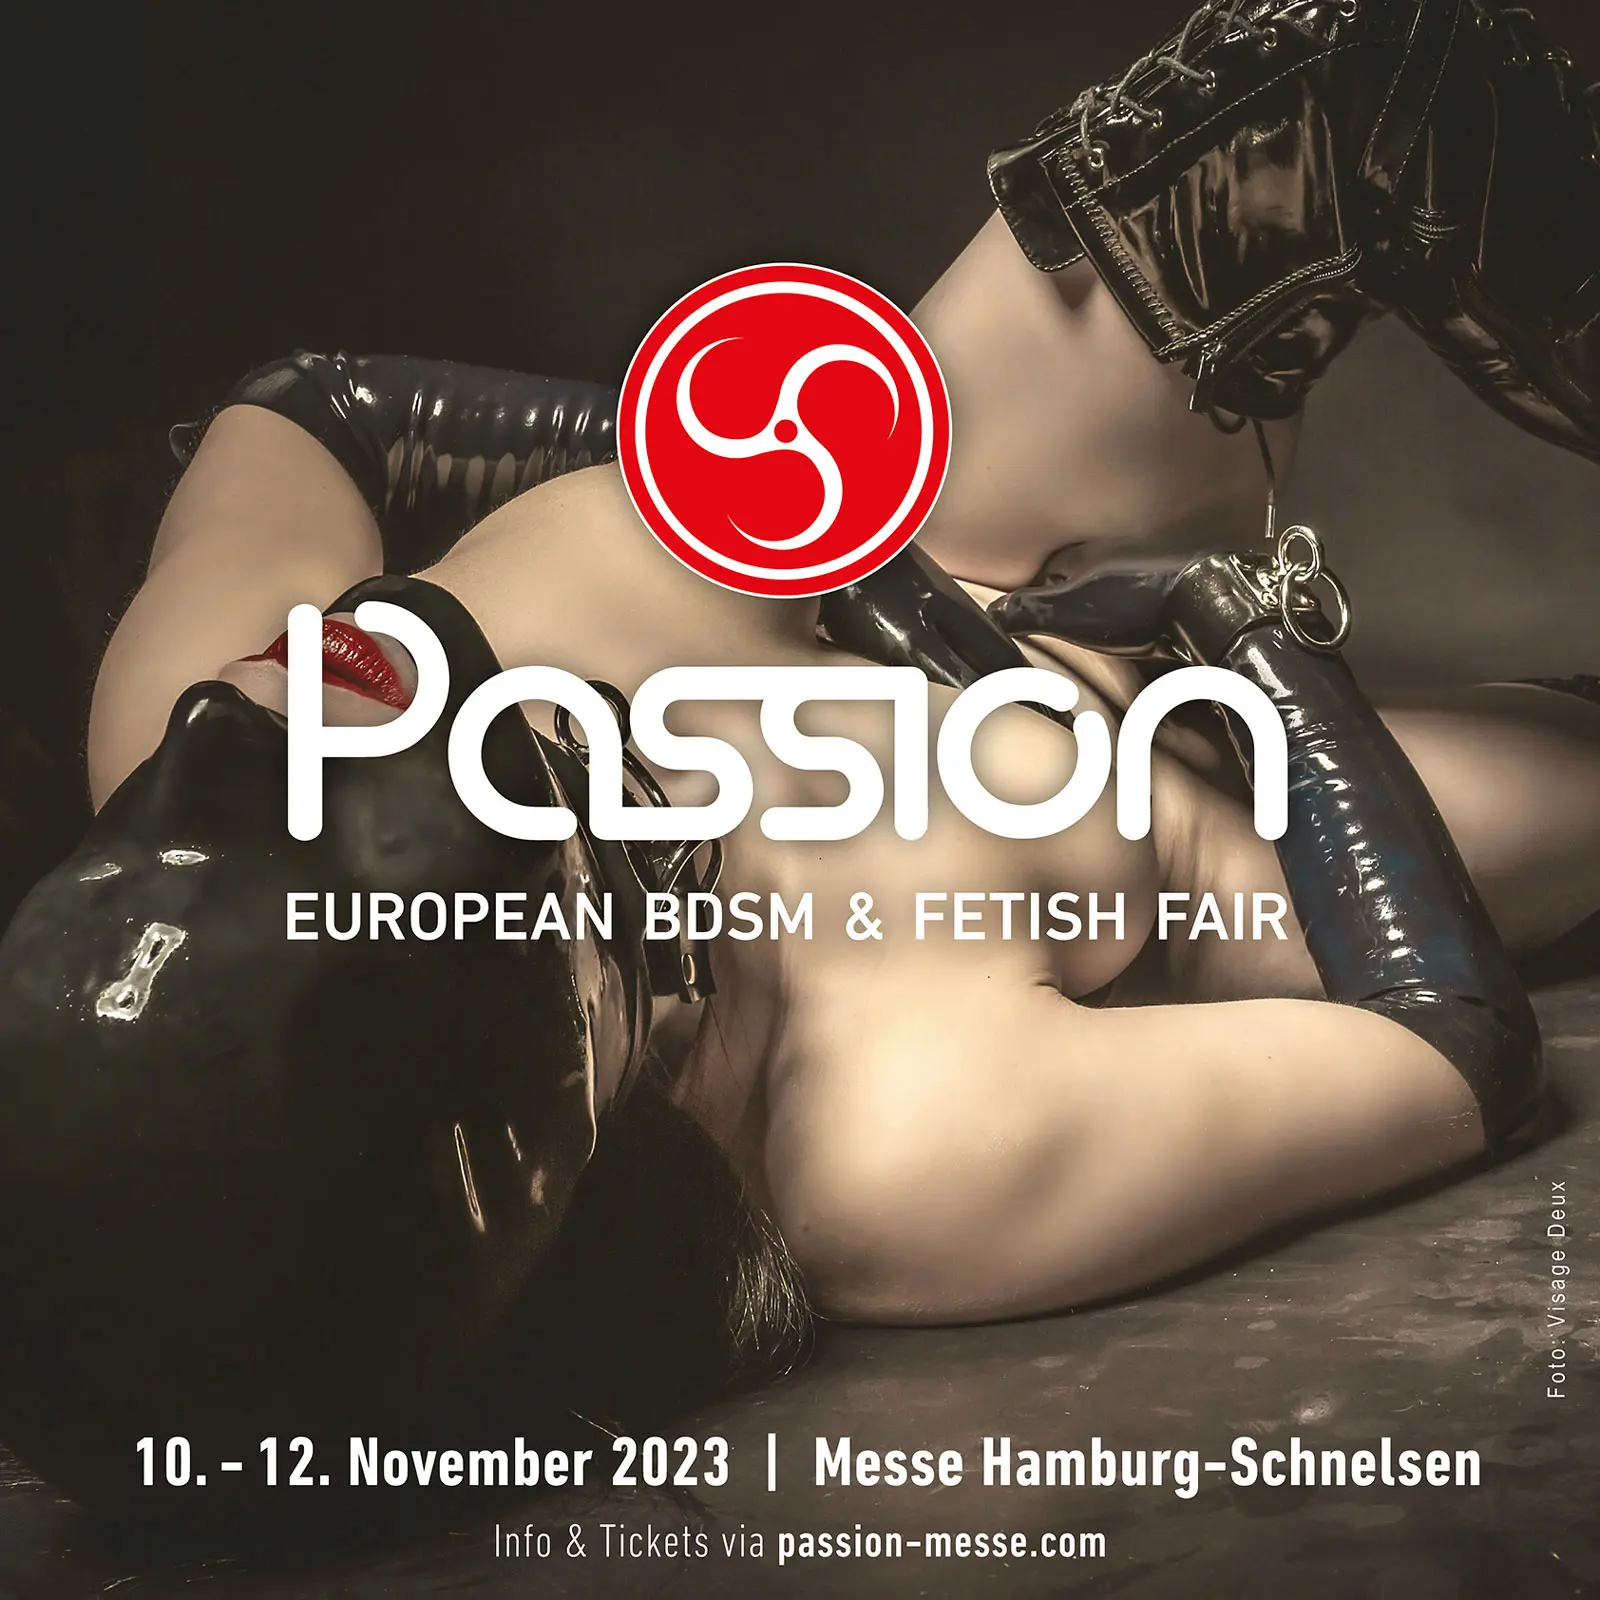 Willkommen zur Passion 2023 - European BDSM & Fetish Fair